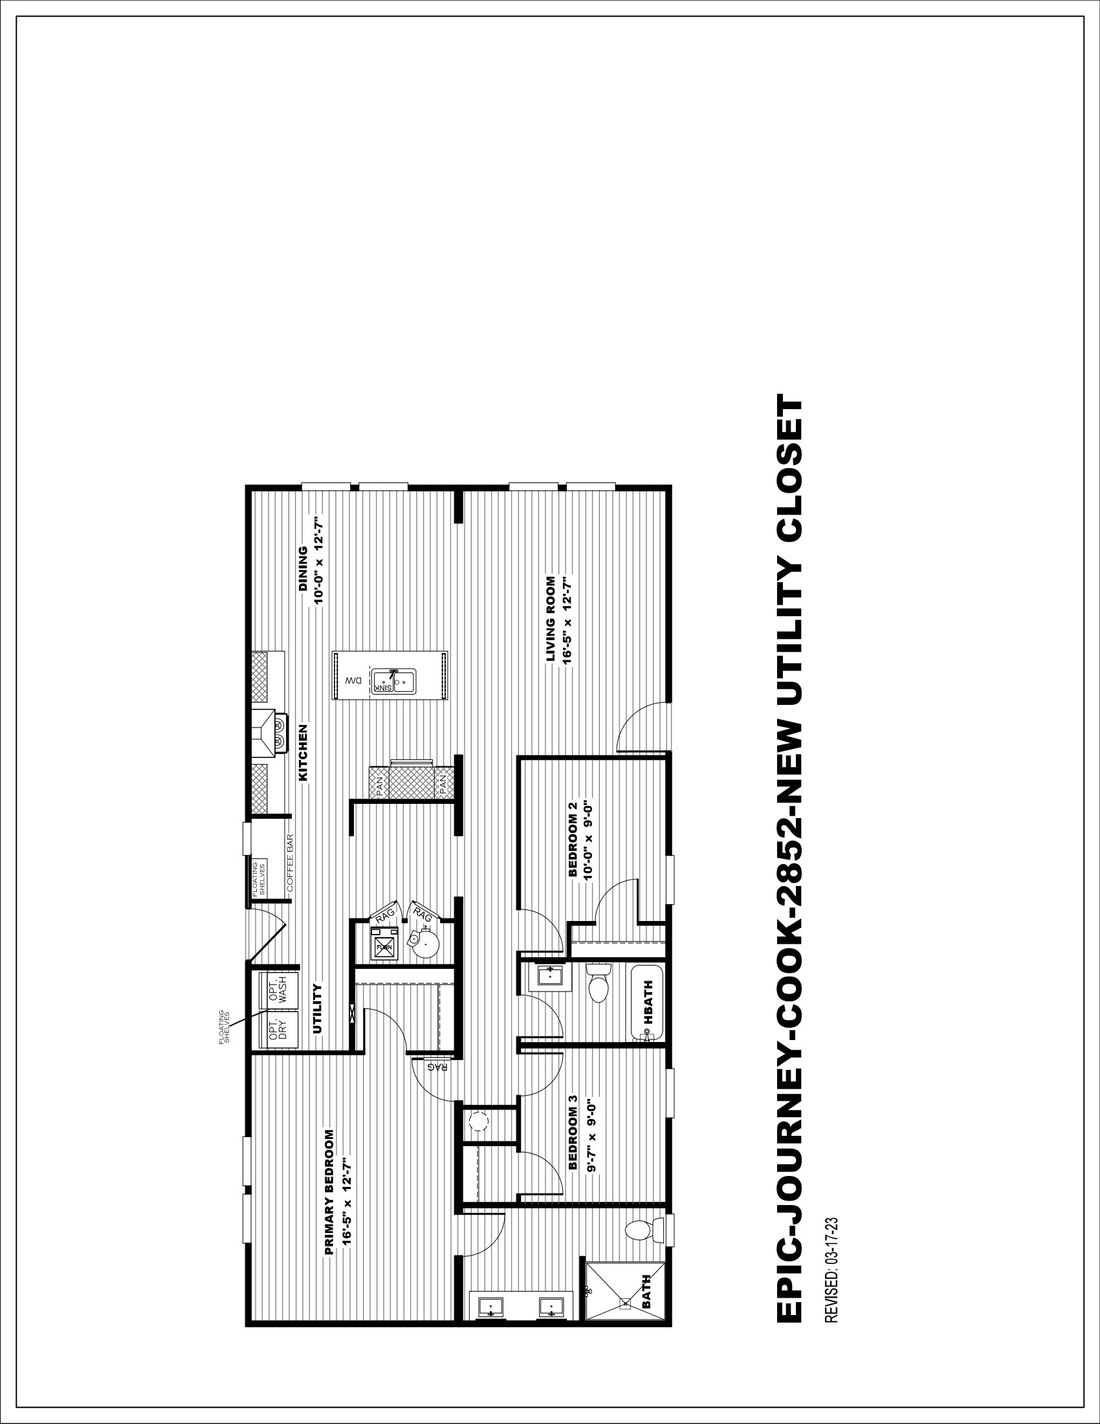 The COOK 5228-1152 Floor Plan